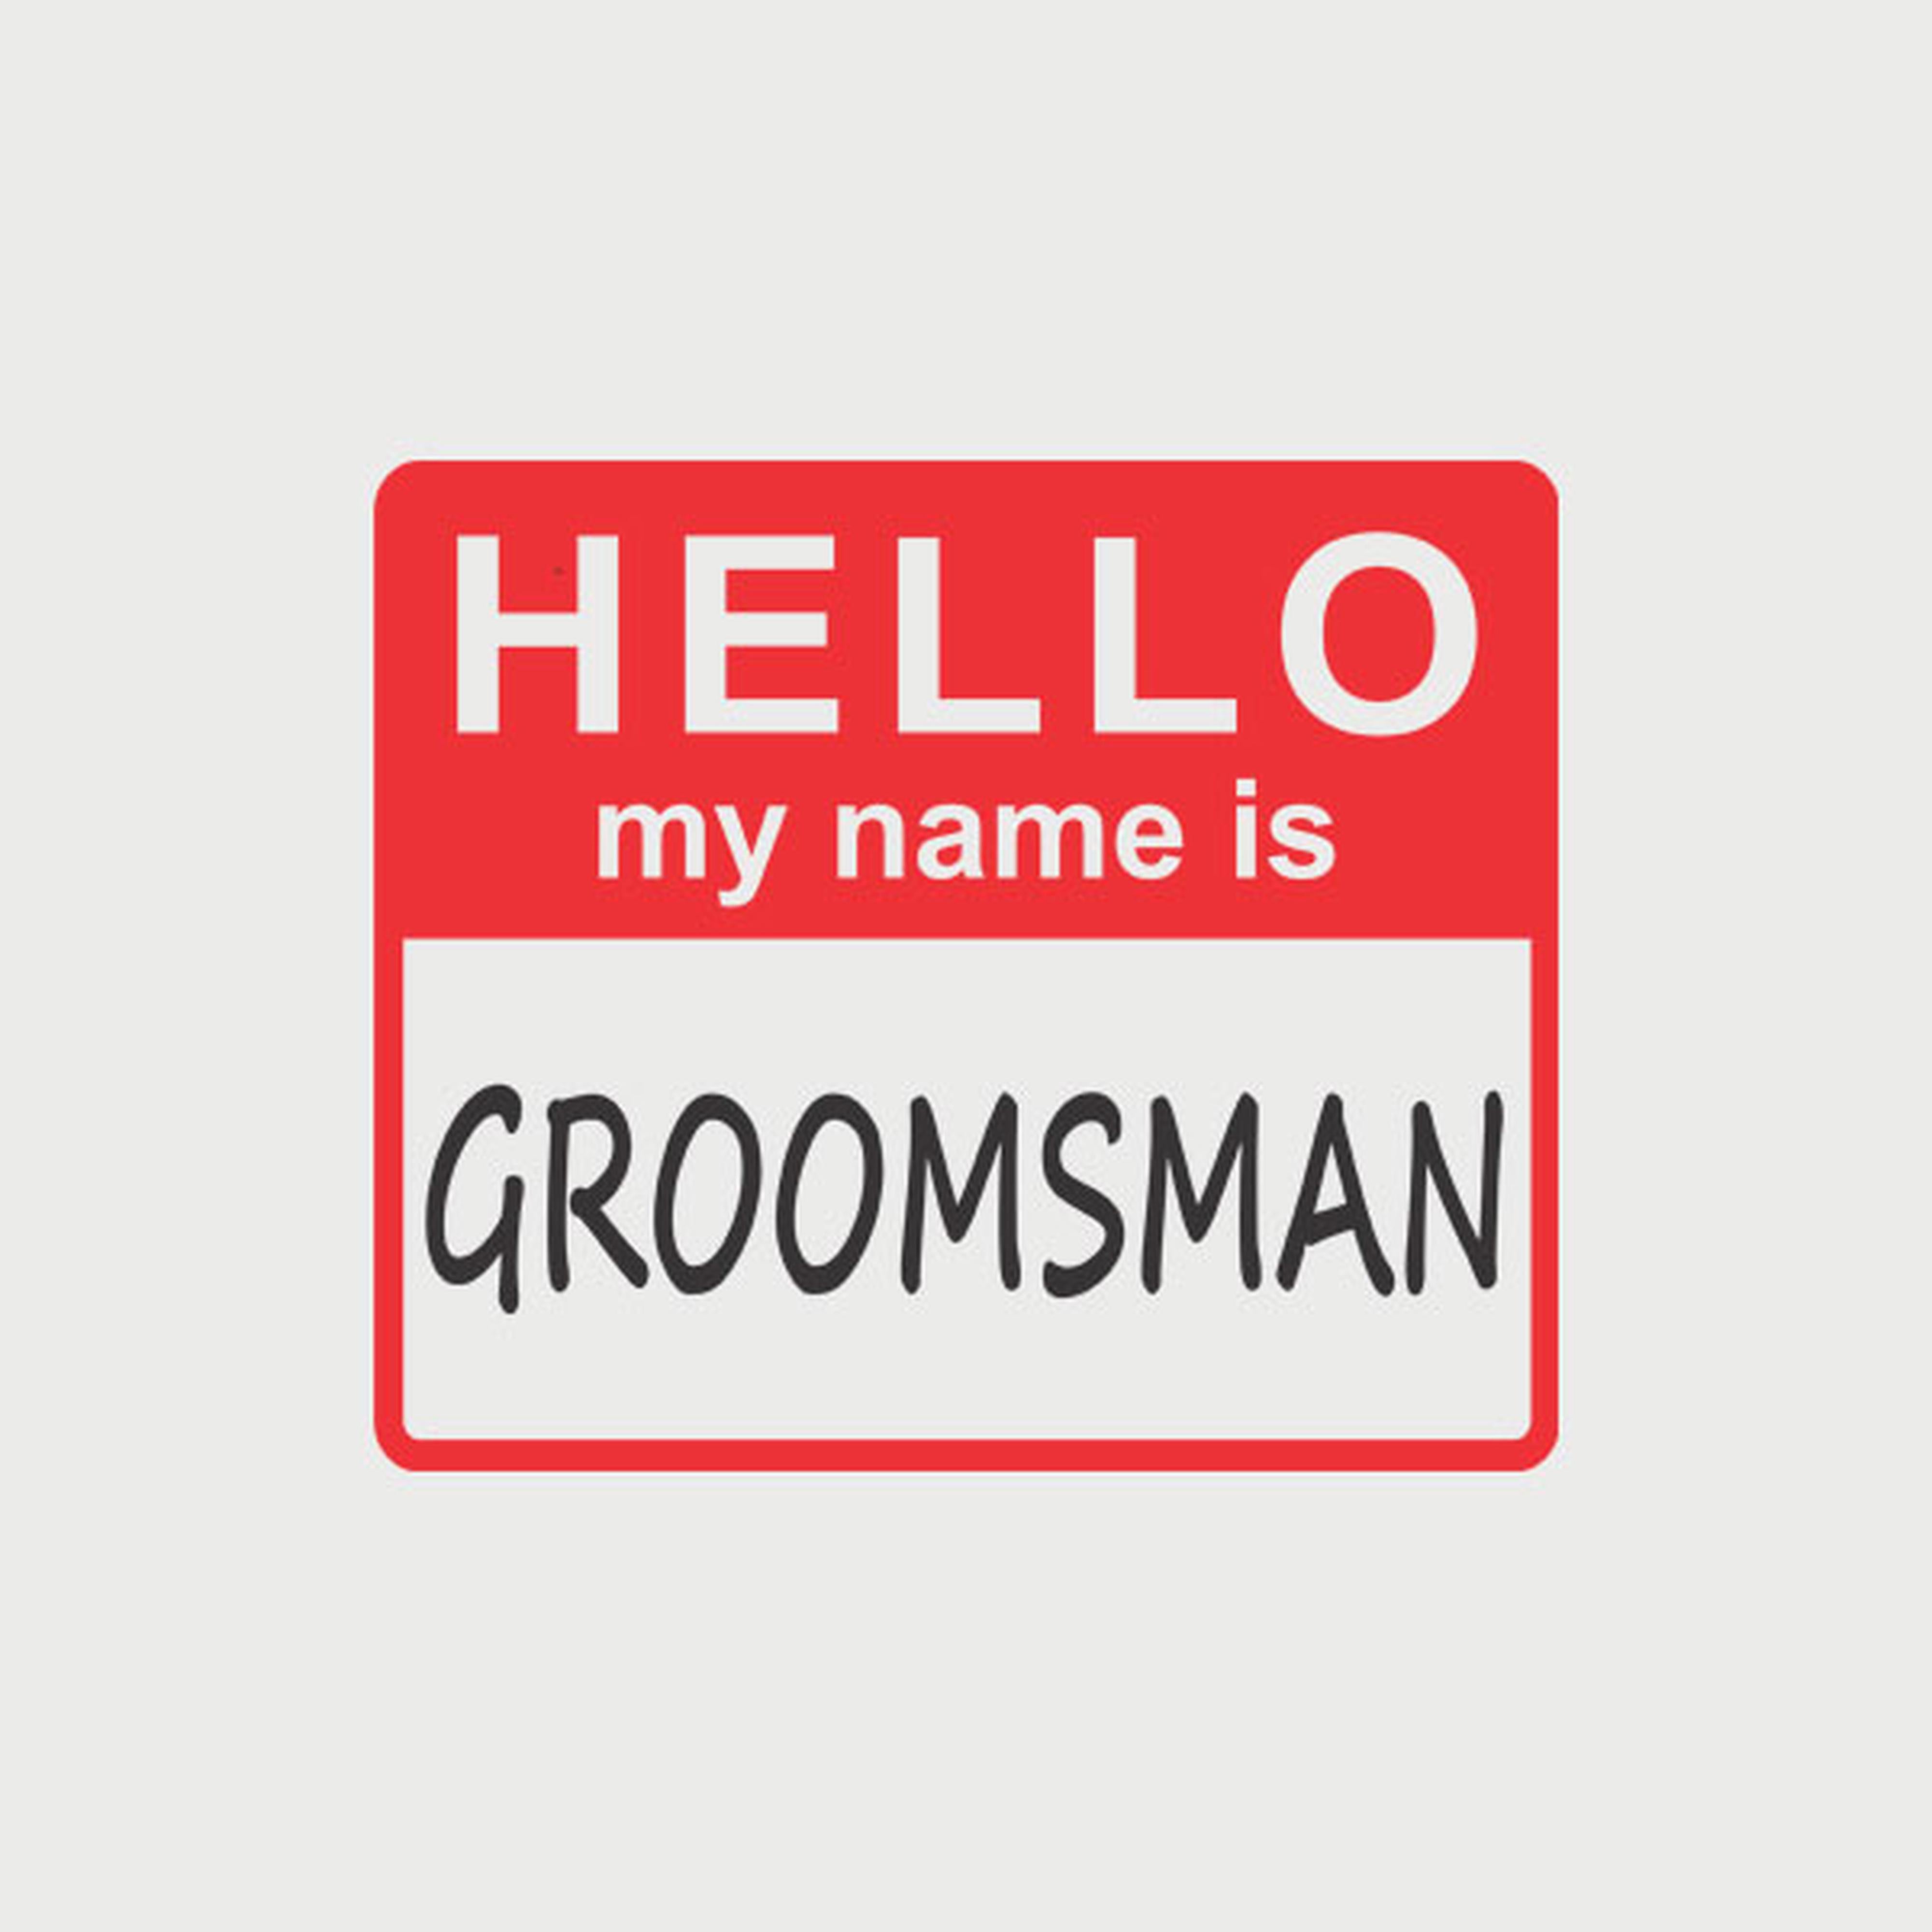 HELLO - My name is groomsman